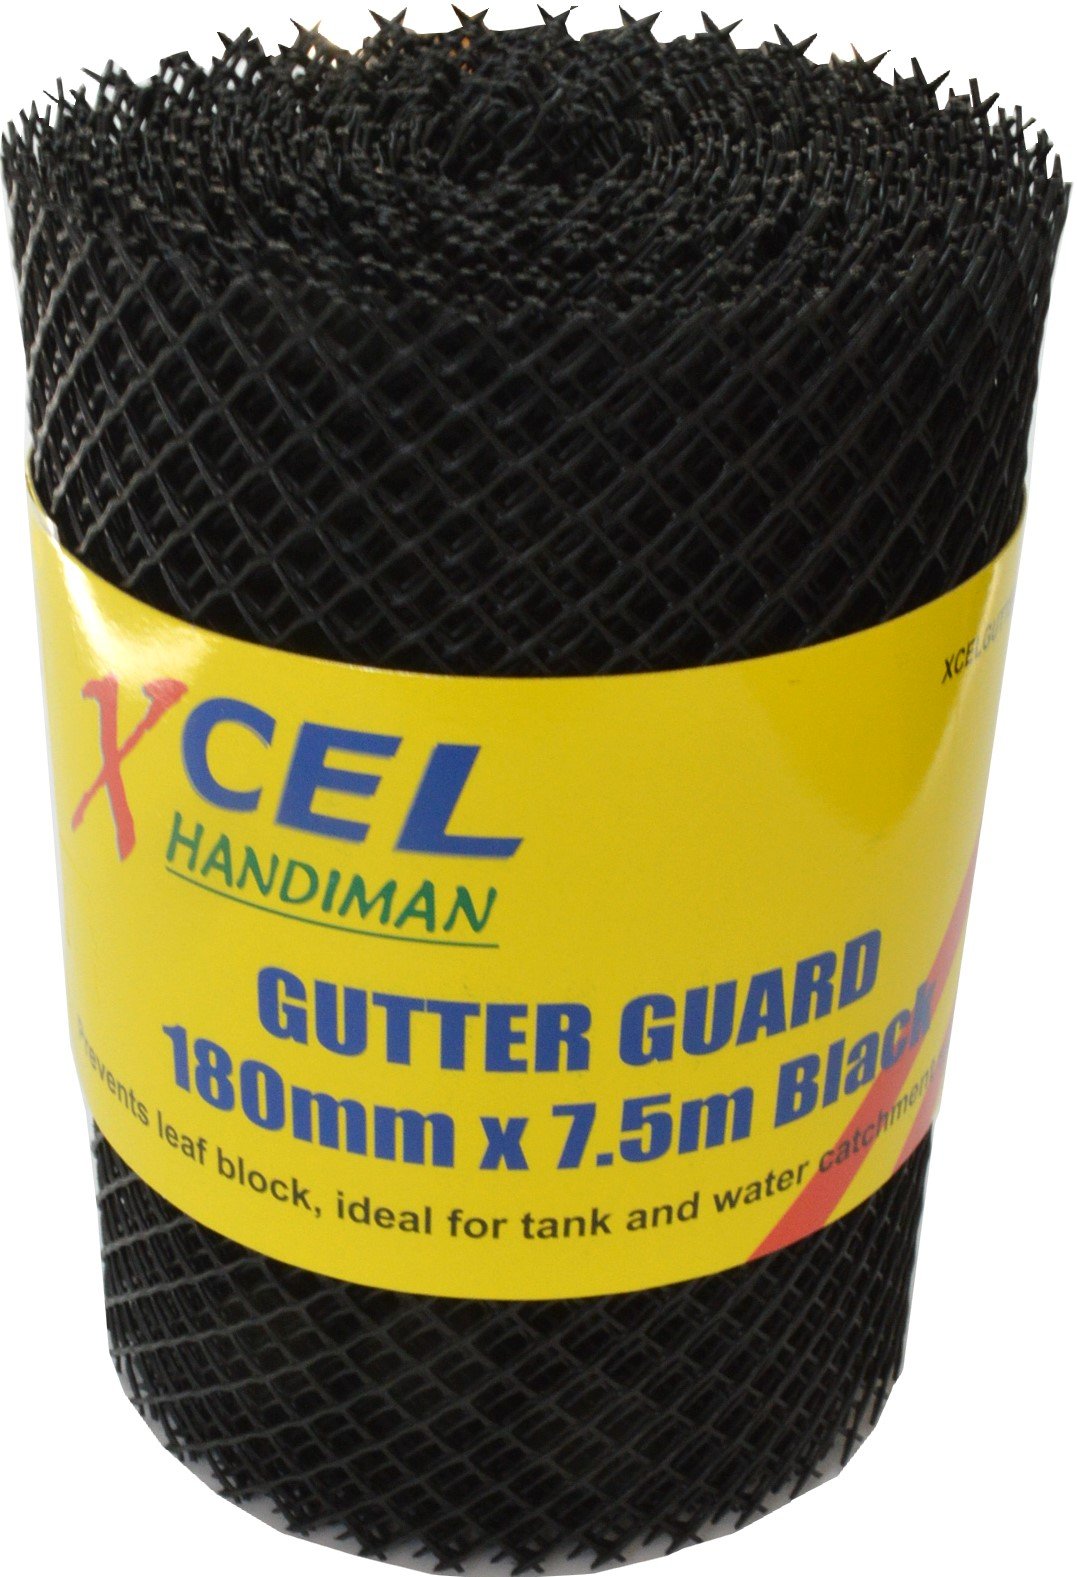 Gutter Guard 180mm x 7.5m Xcel